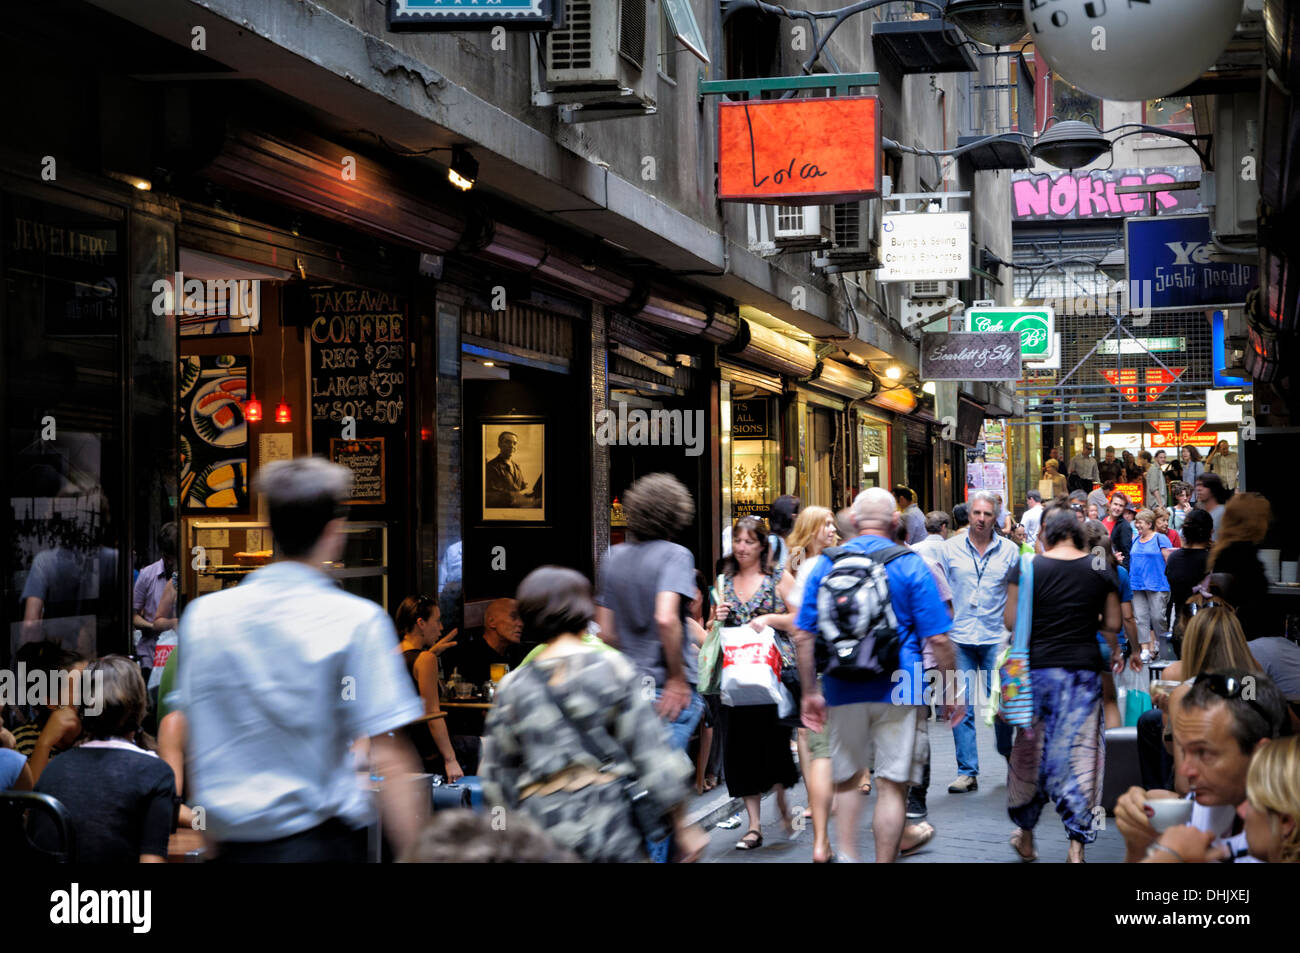 Gli acquirenti di occupato la folla la famosa laneways di Melbourne, Australia; laneways di Melbourne; vicolo; people shopping; folla; affollata; luogo centrale; Foto Stock